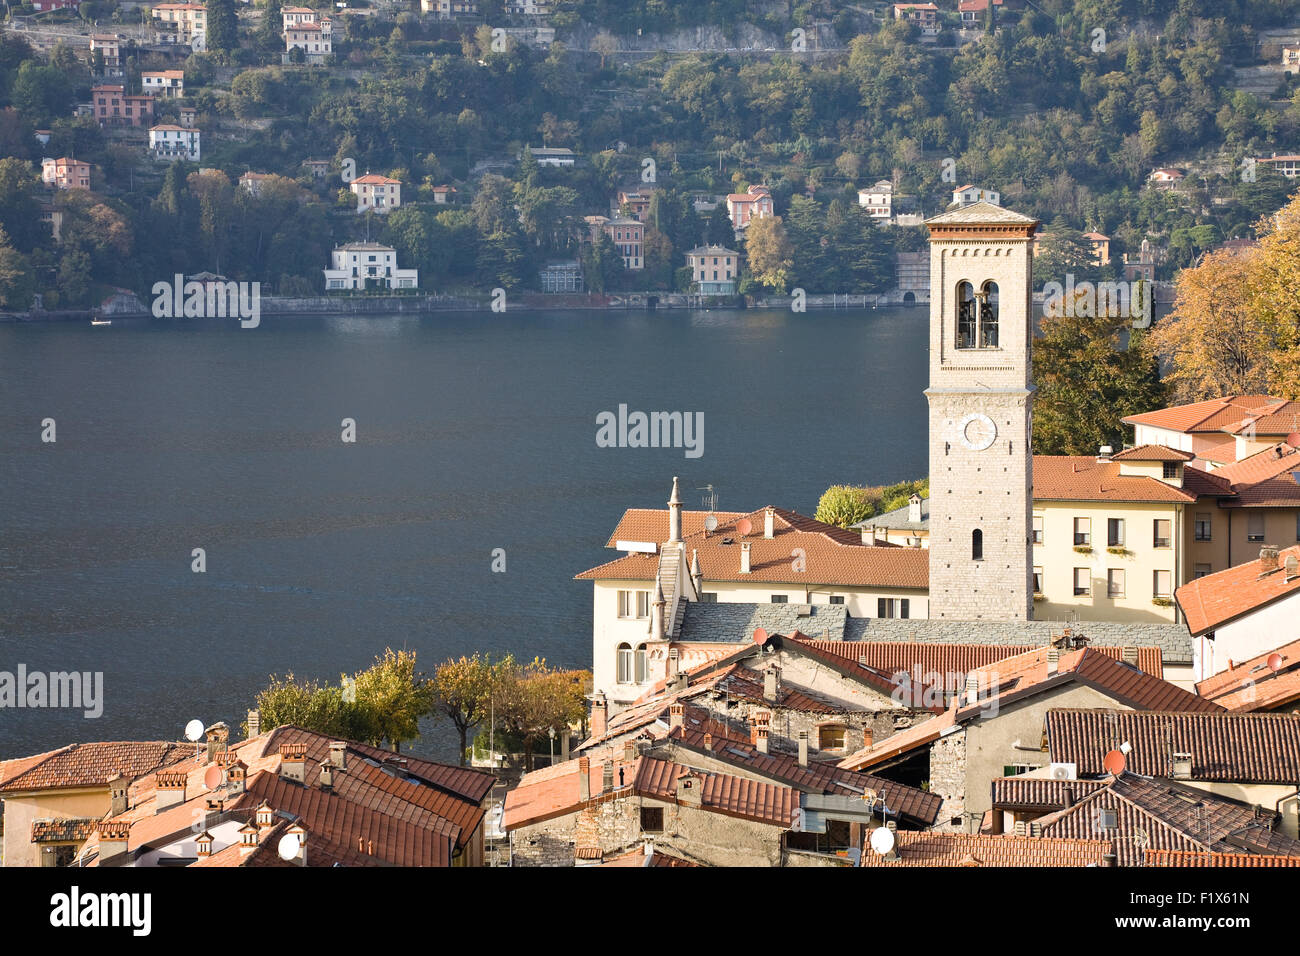 Das Dorf von Torno am Comer See in der Lombardei, Italien Stockfoto